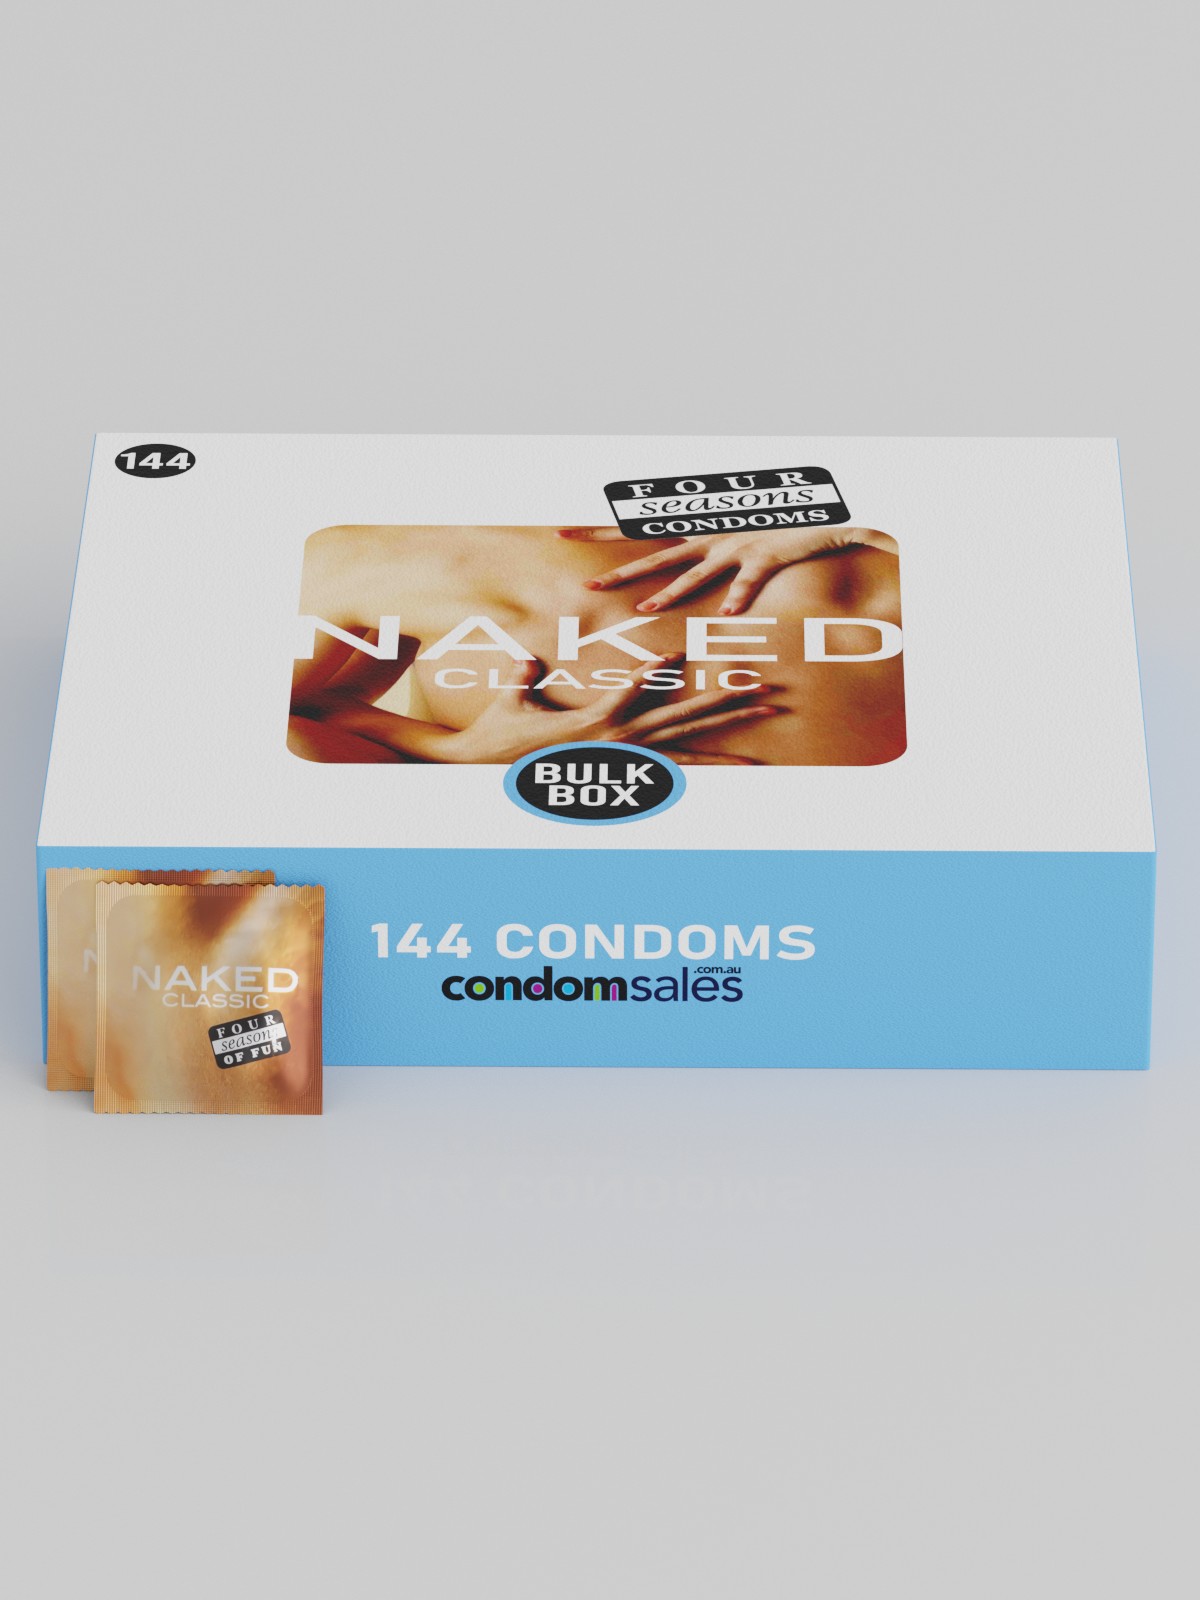 Four Seasons Naked Condoms (144 Bulk) - Buy Bulk Condoms Online